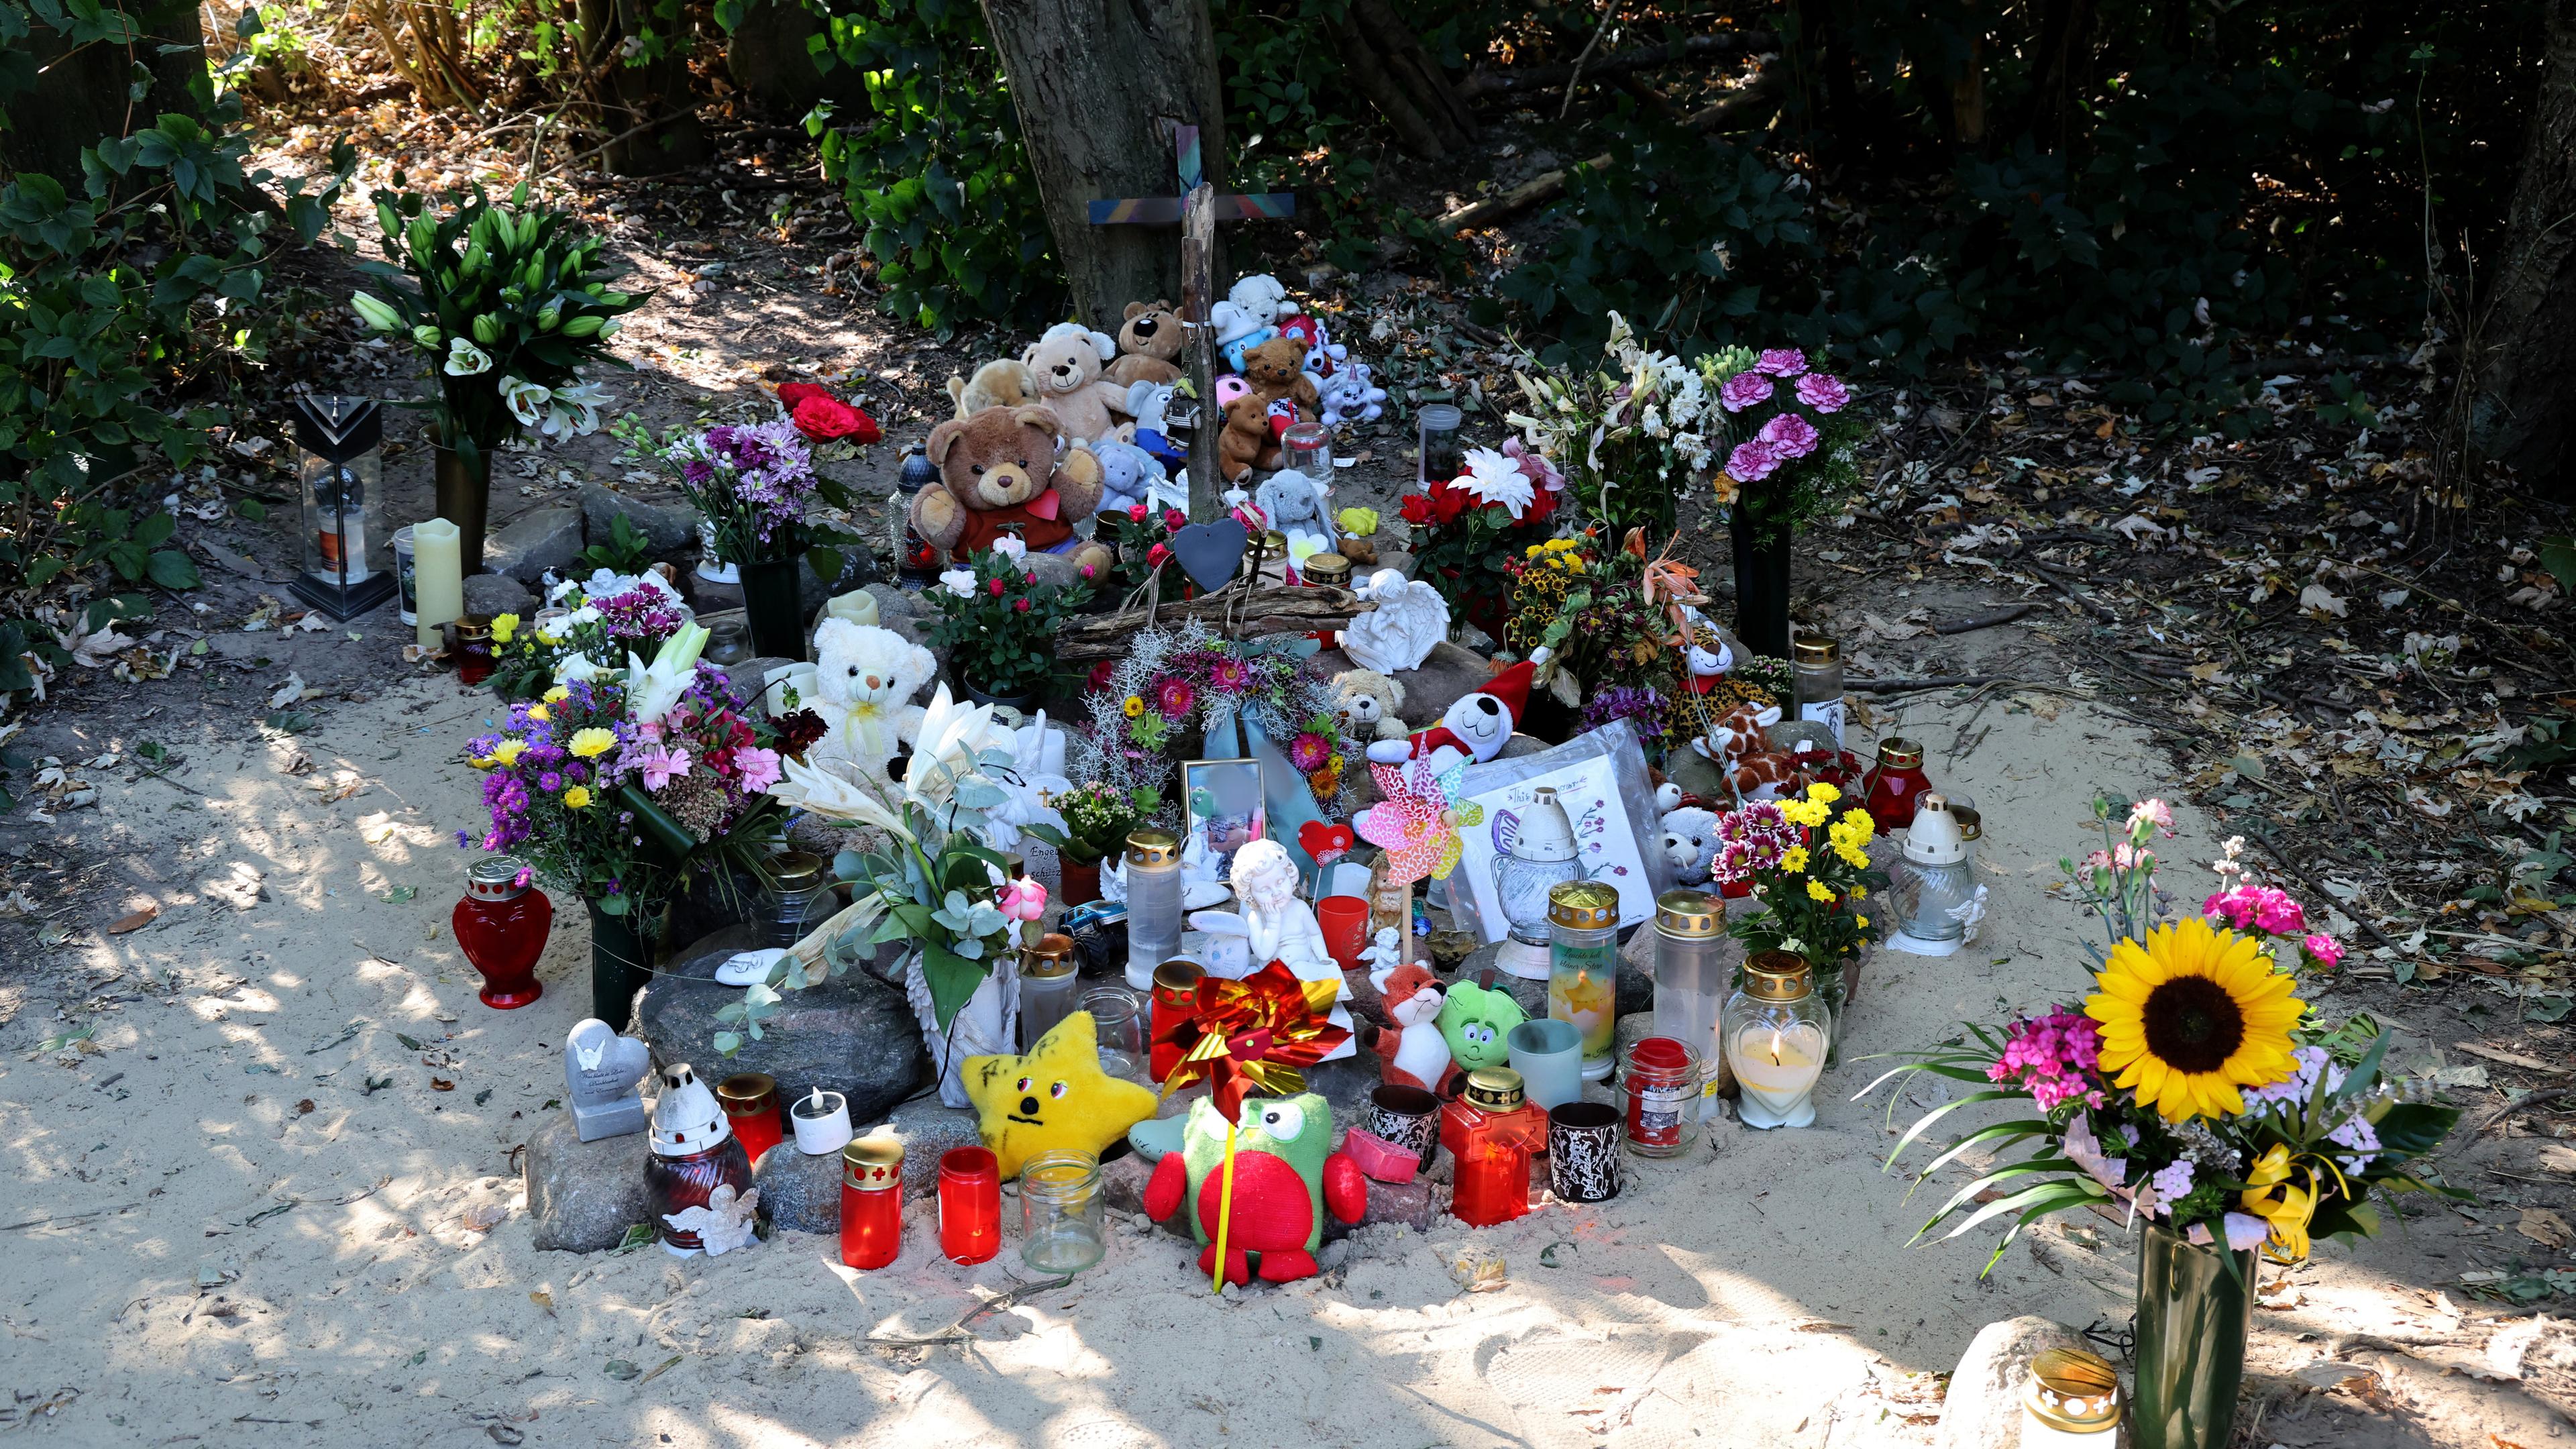 An der Stelle in unmittelbarer Nähe des Sees in Pragsdorf wurden ein Kreuz, Blumen, Kerzen, Bilder und Plüschtiere aufgestellt